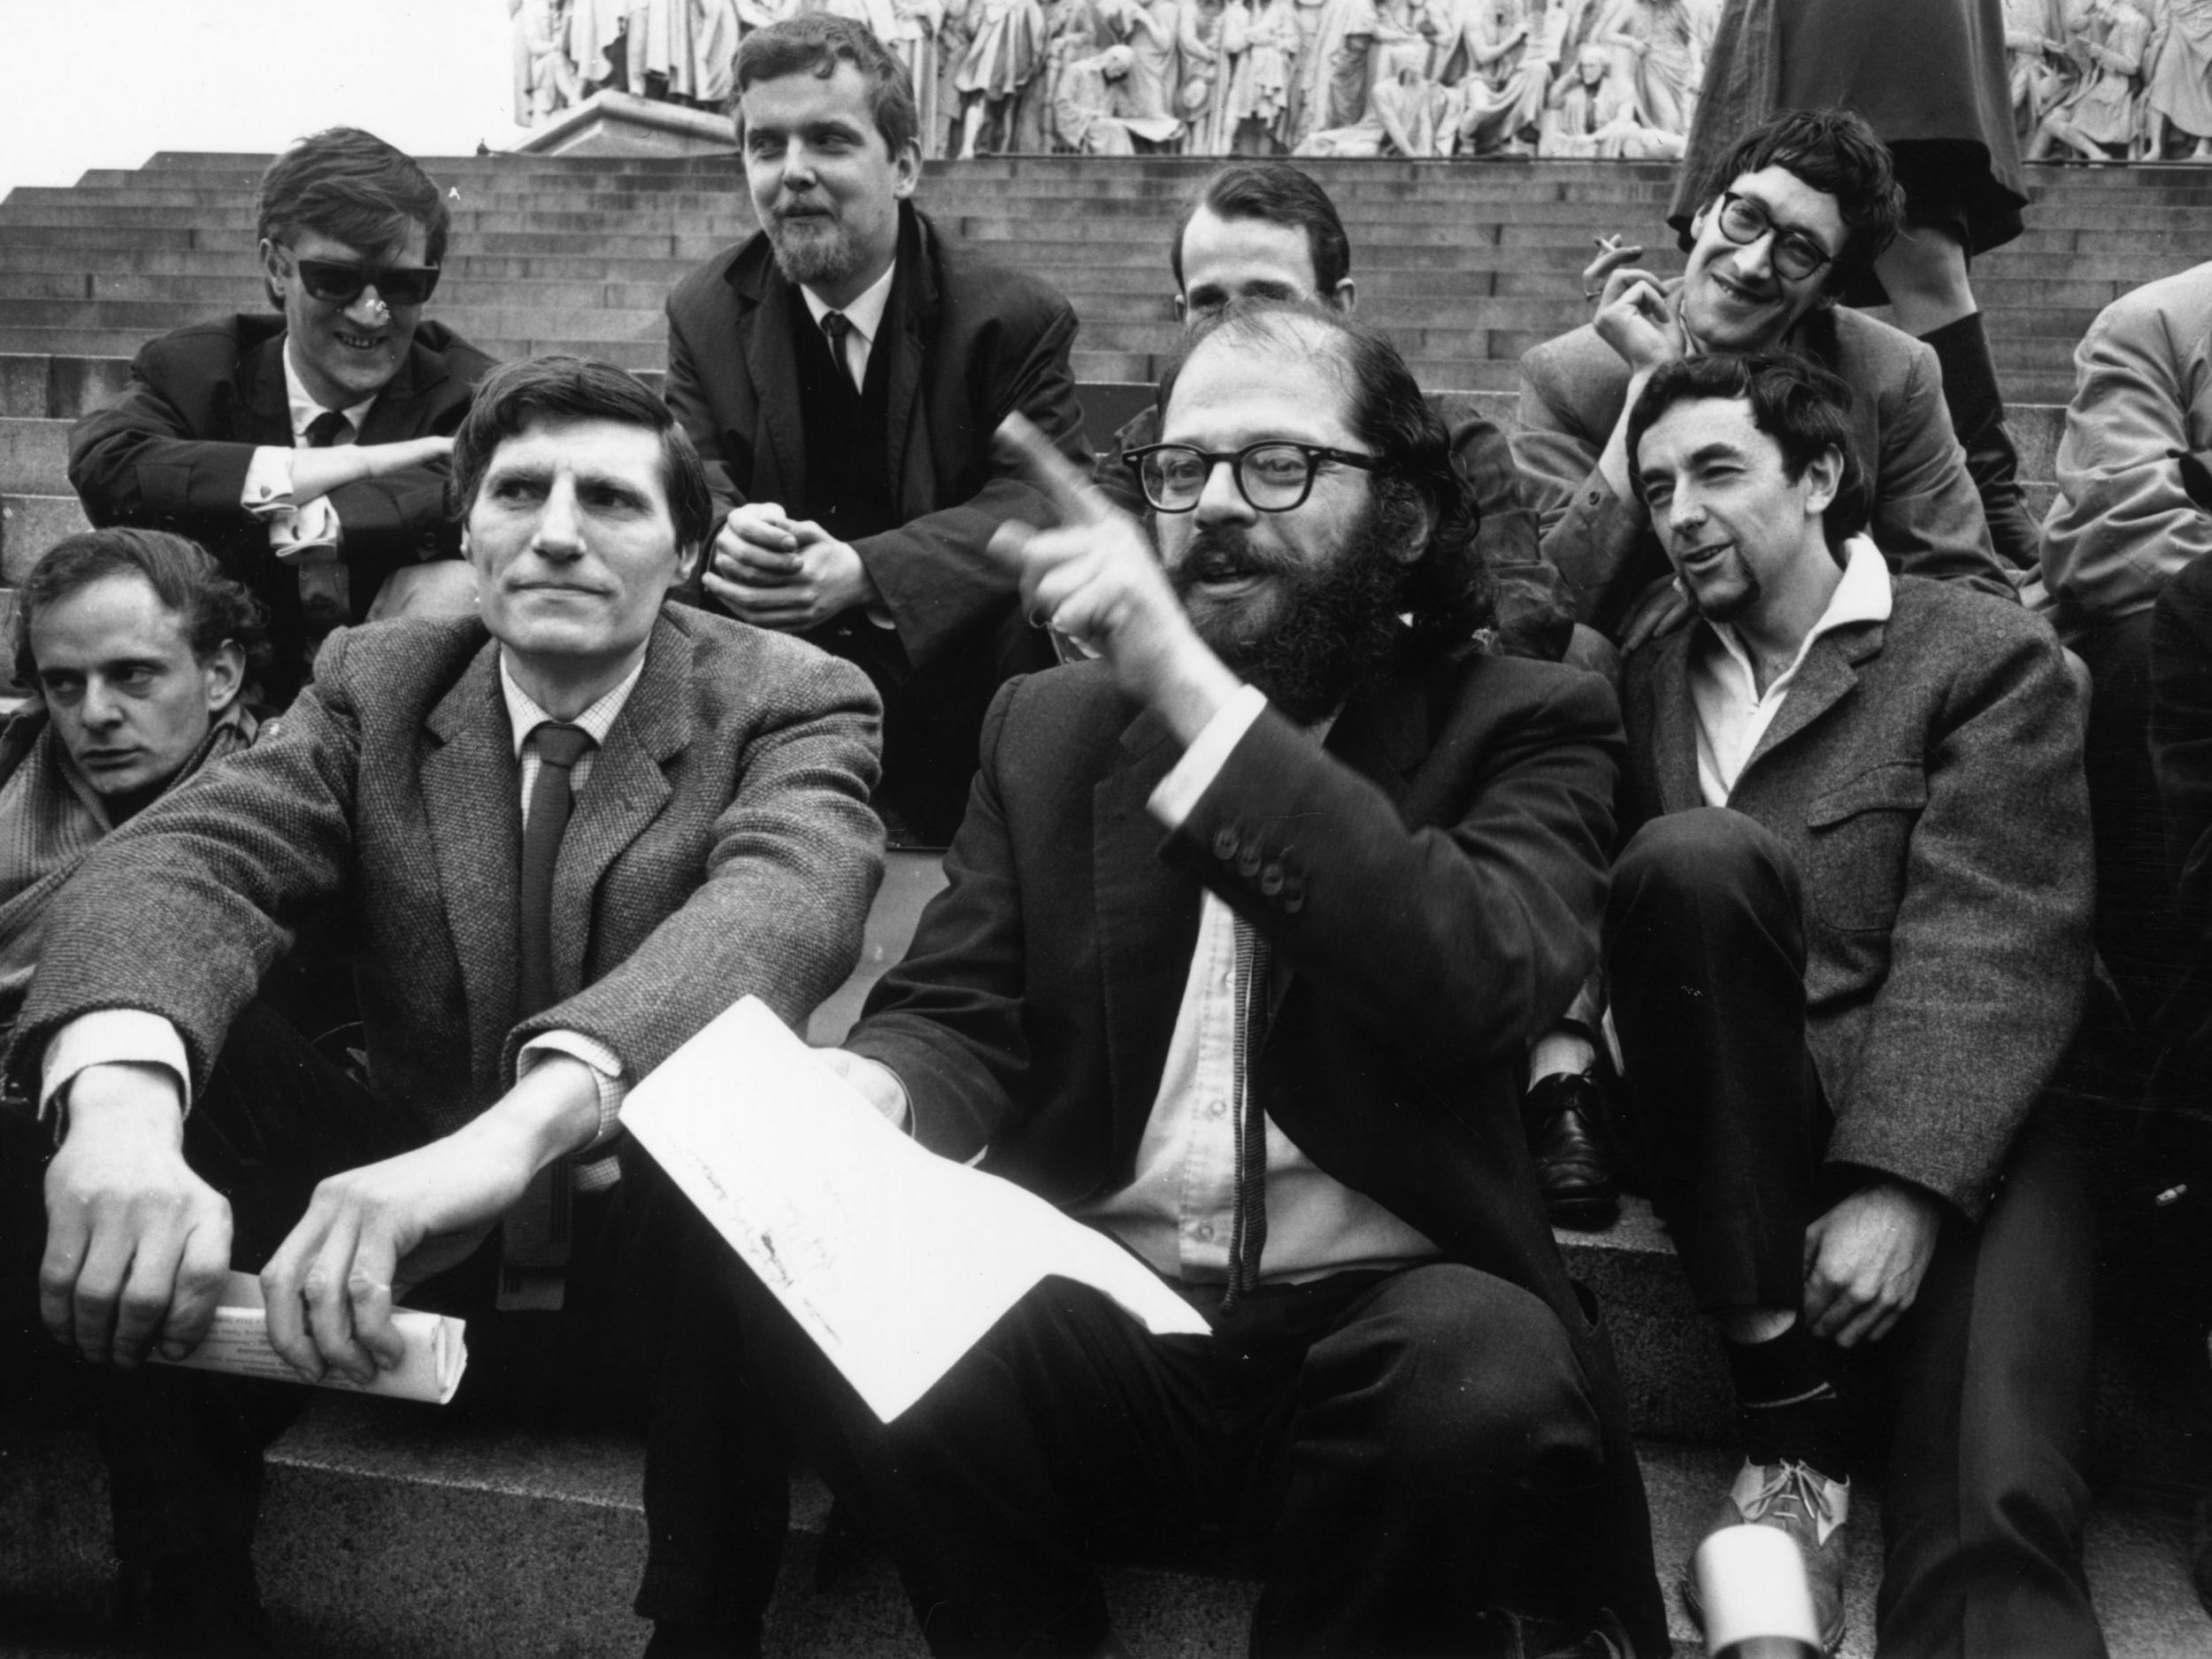 Beat poet Allen Ginsberg, front, in 1965